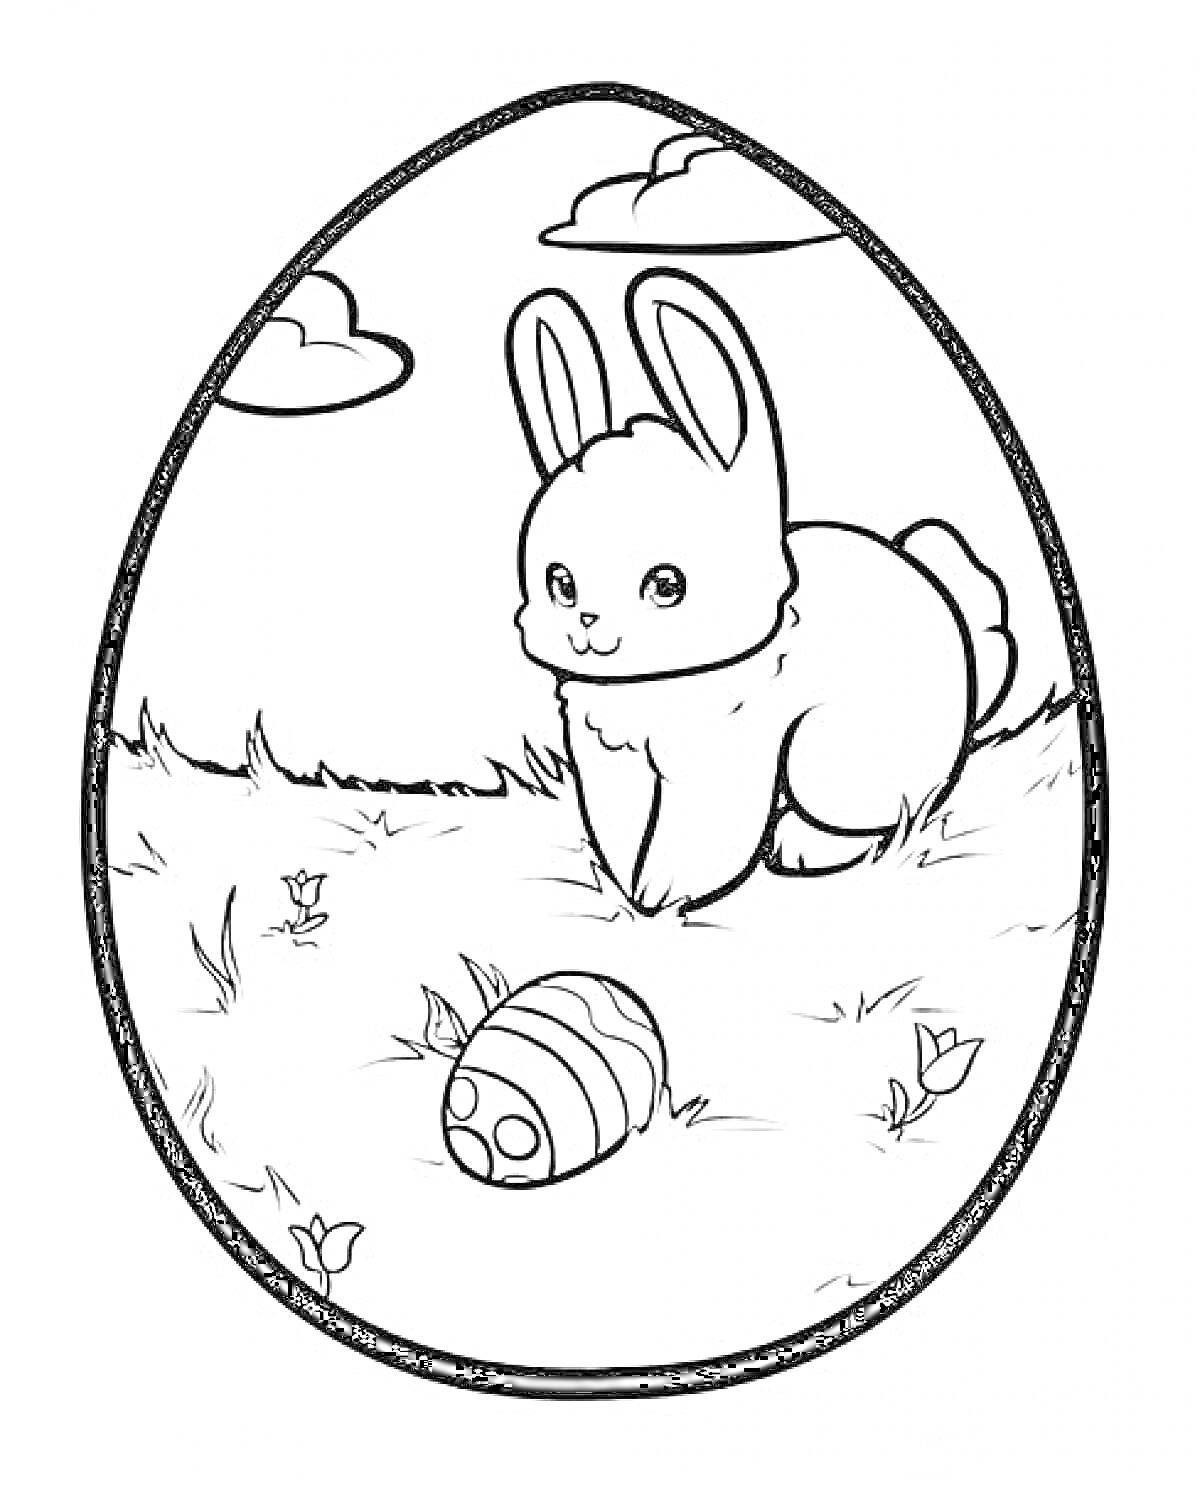 Пасхальное яйцо с зайцем и украшенным яйцом на траве под облаками